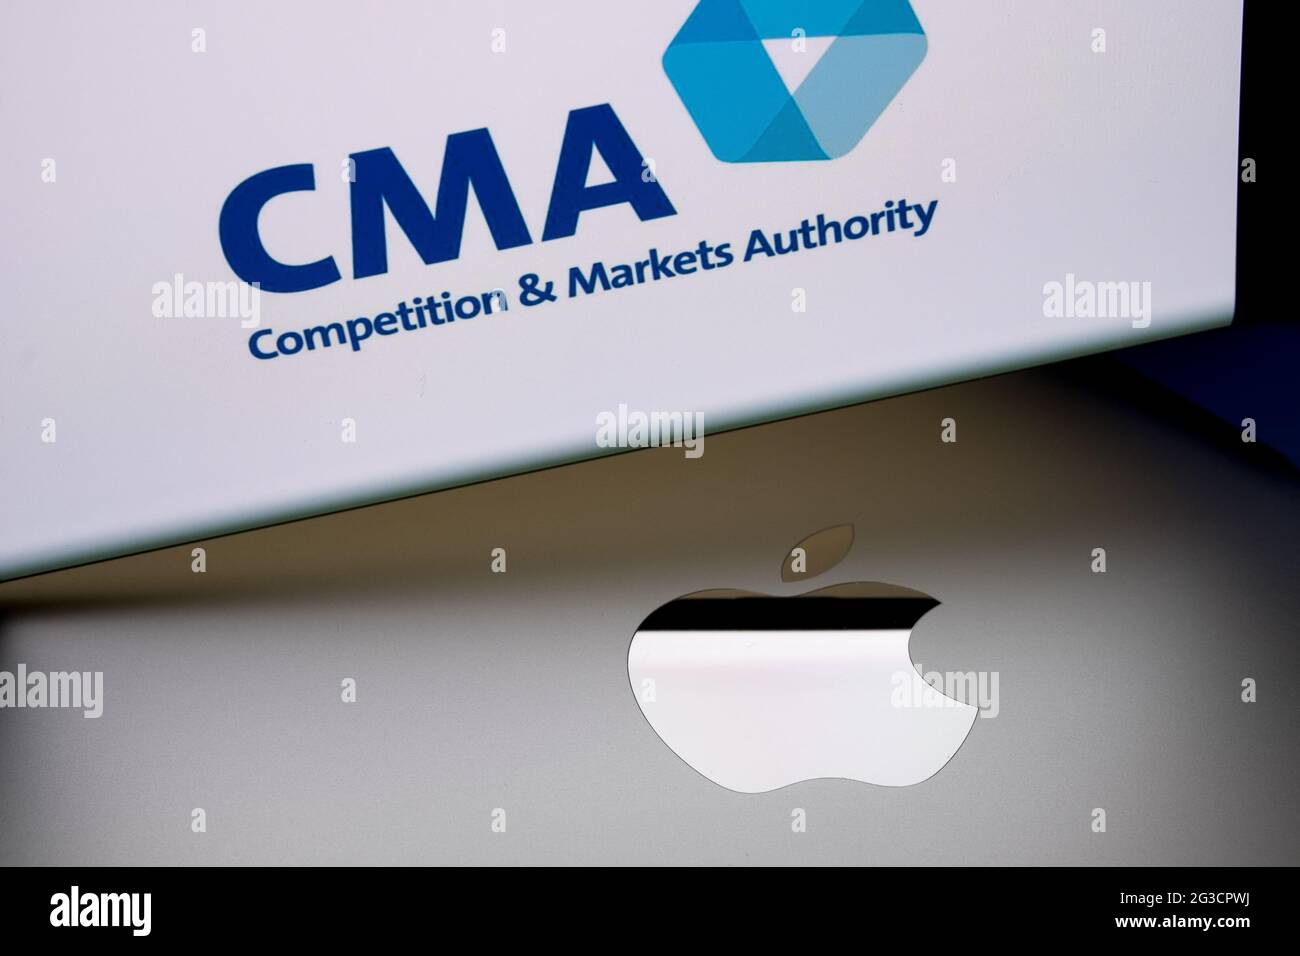 El logotipo de Apple en la superficie de Macbook y el logotipo de UK CMA Competition y Markets Authority se ven borrosos en la pantalla del smartphone. Concepto. Stafford, Rey Unido Foto de stock